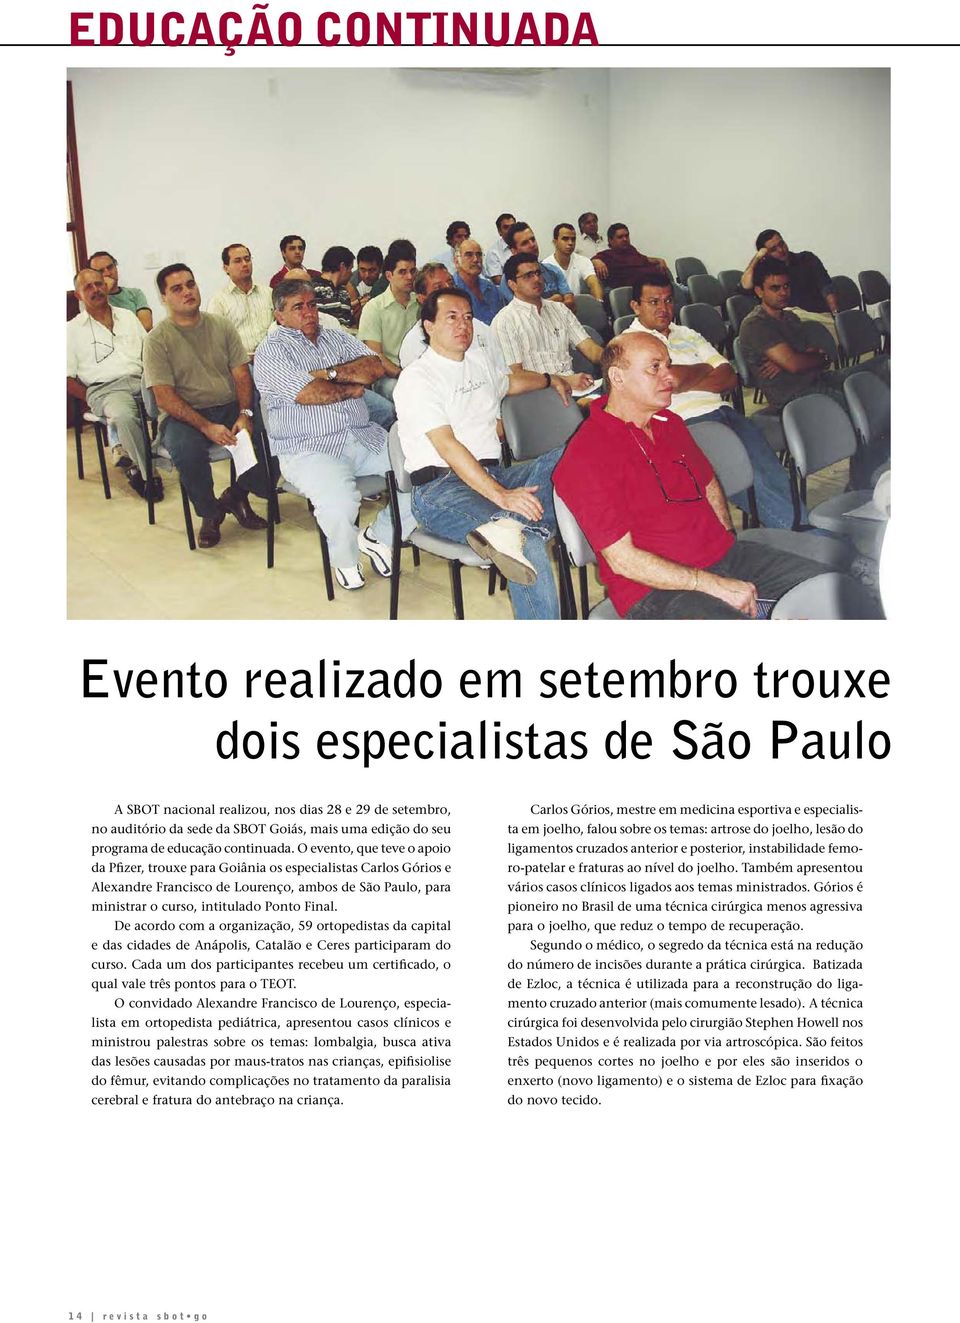 O evento, que teve o apoio da Pfizer, trouxe para Goiânia os especialistas Carlos Górios e Alexandre Francisco de Lourenço, ambos de São Paulo, para ministrar o curso, intitulado Ponto Final.